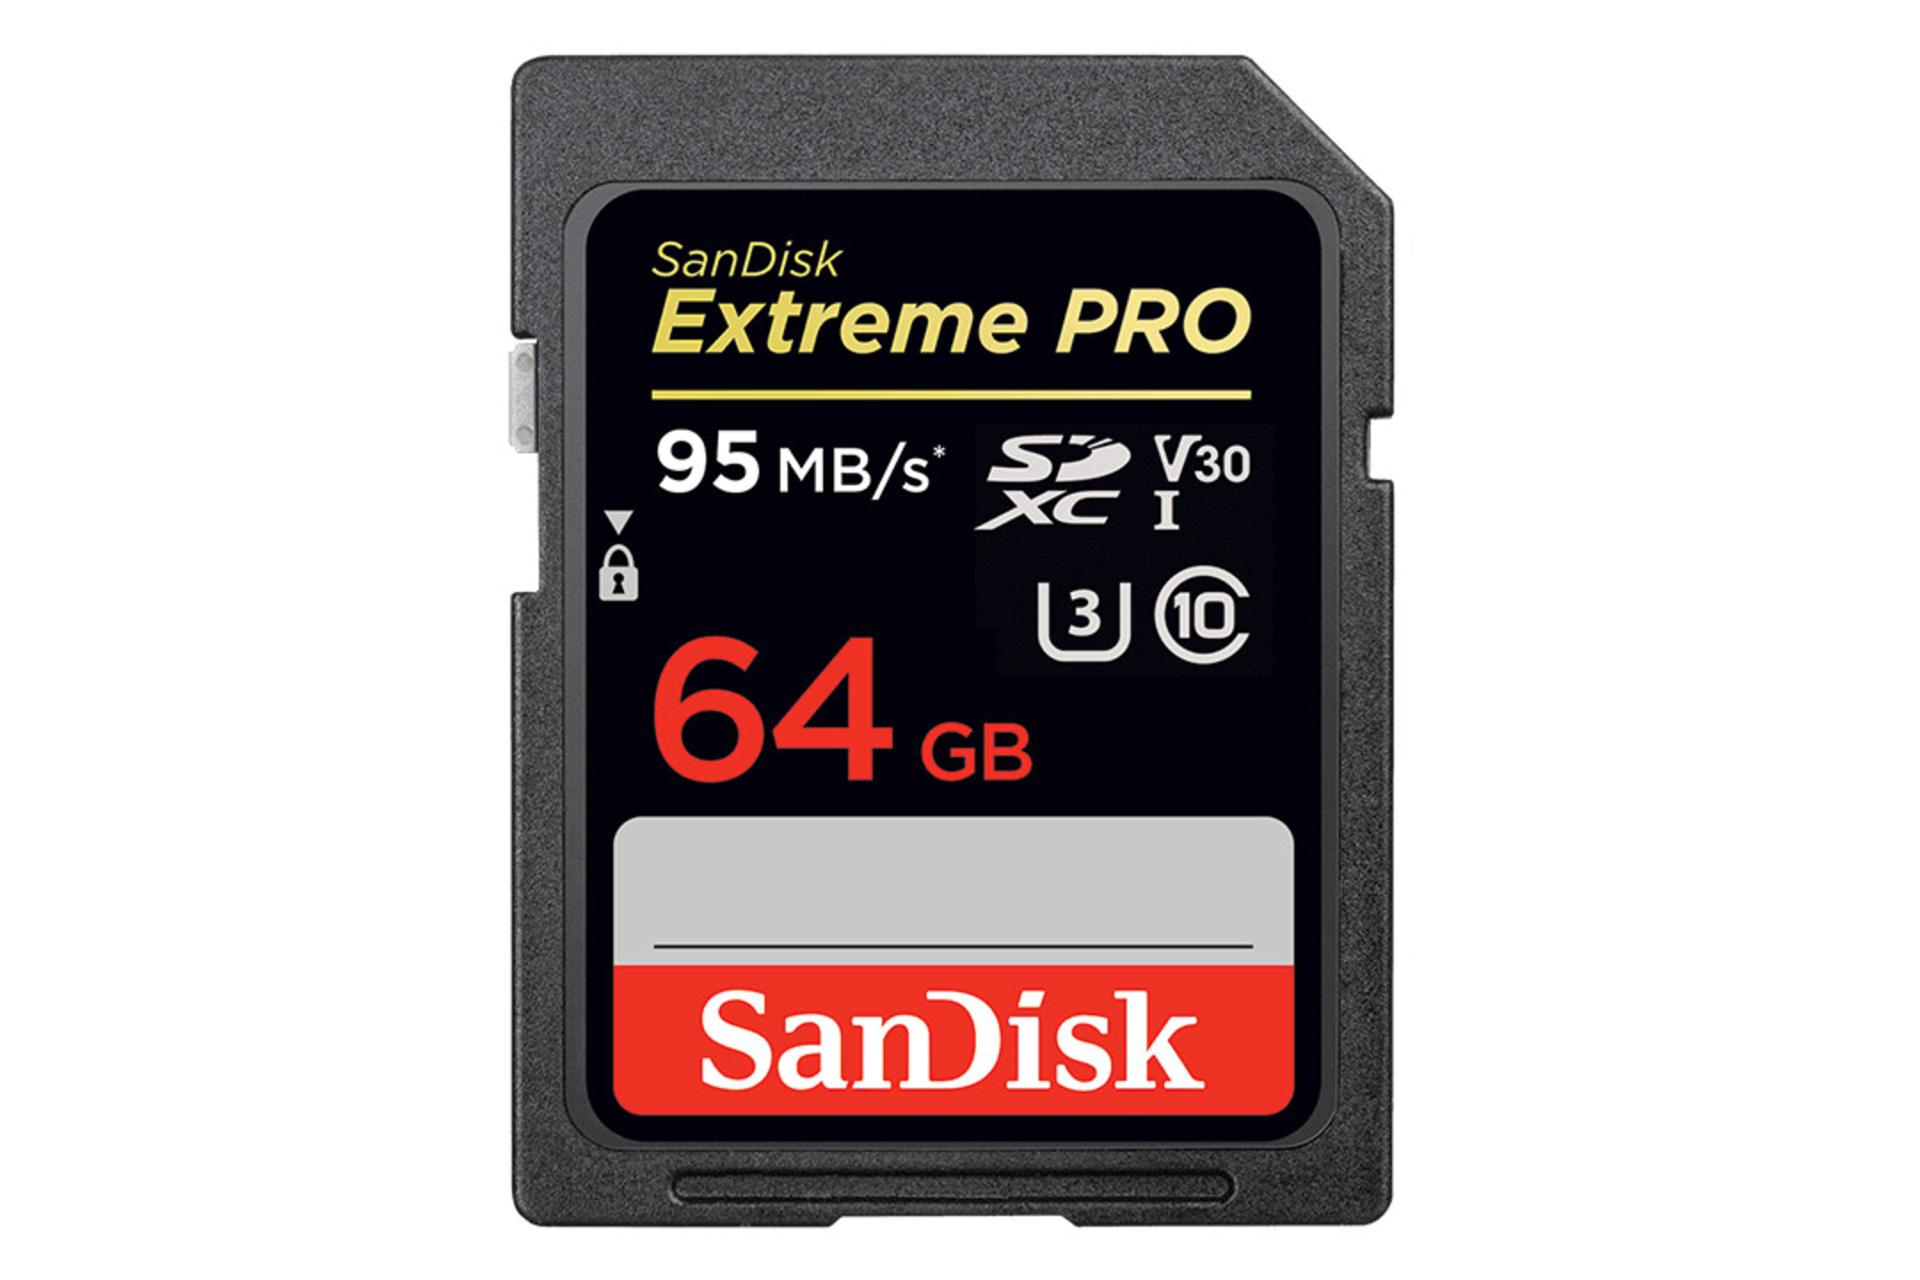 SanDisk Extreme Pro V30 SDHC Class 10 UHS-I U3 64GB